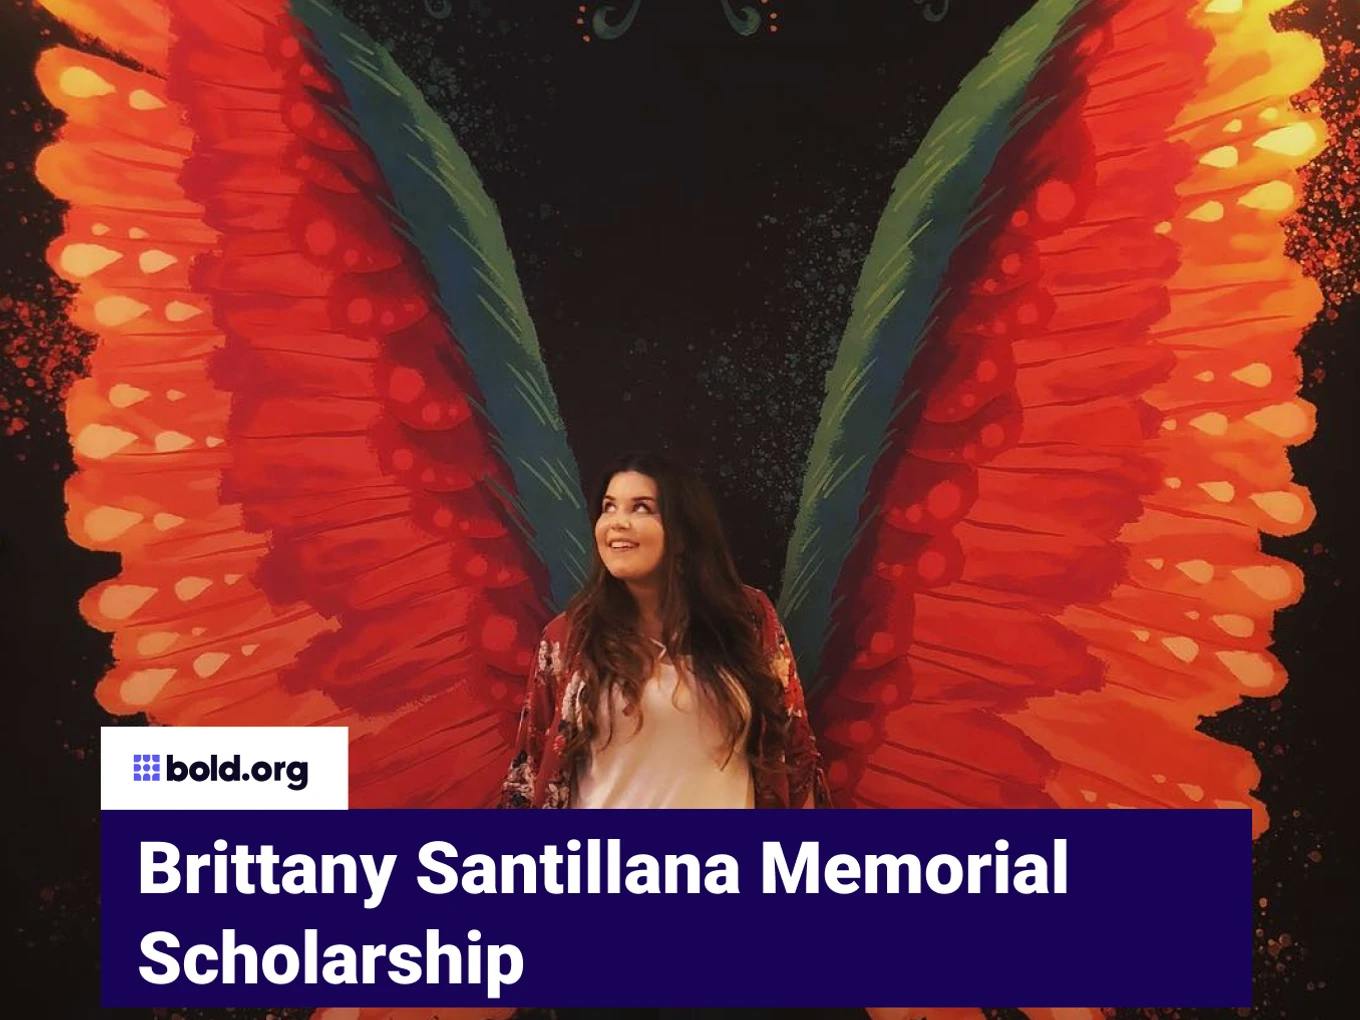 Brittany Santillana Memorial Scholarship